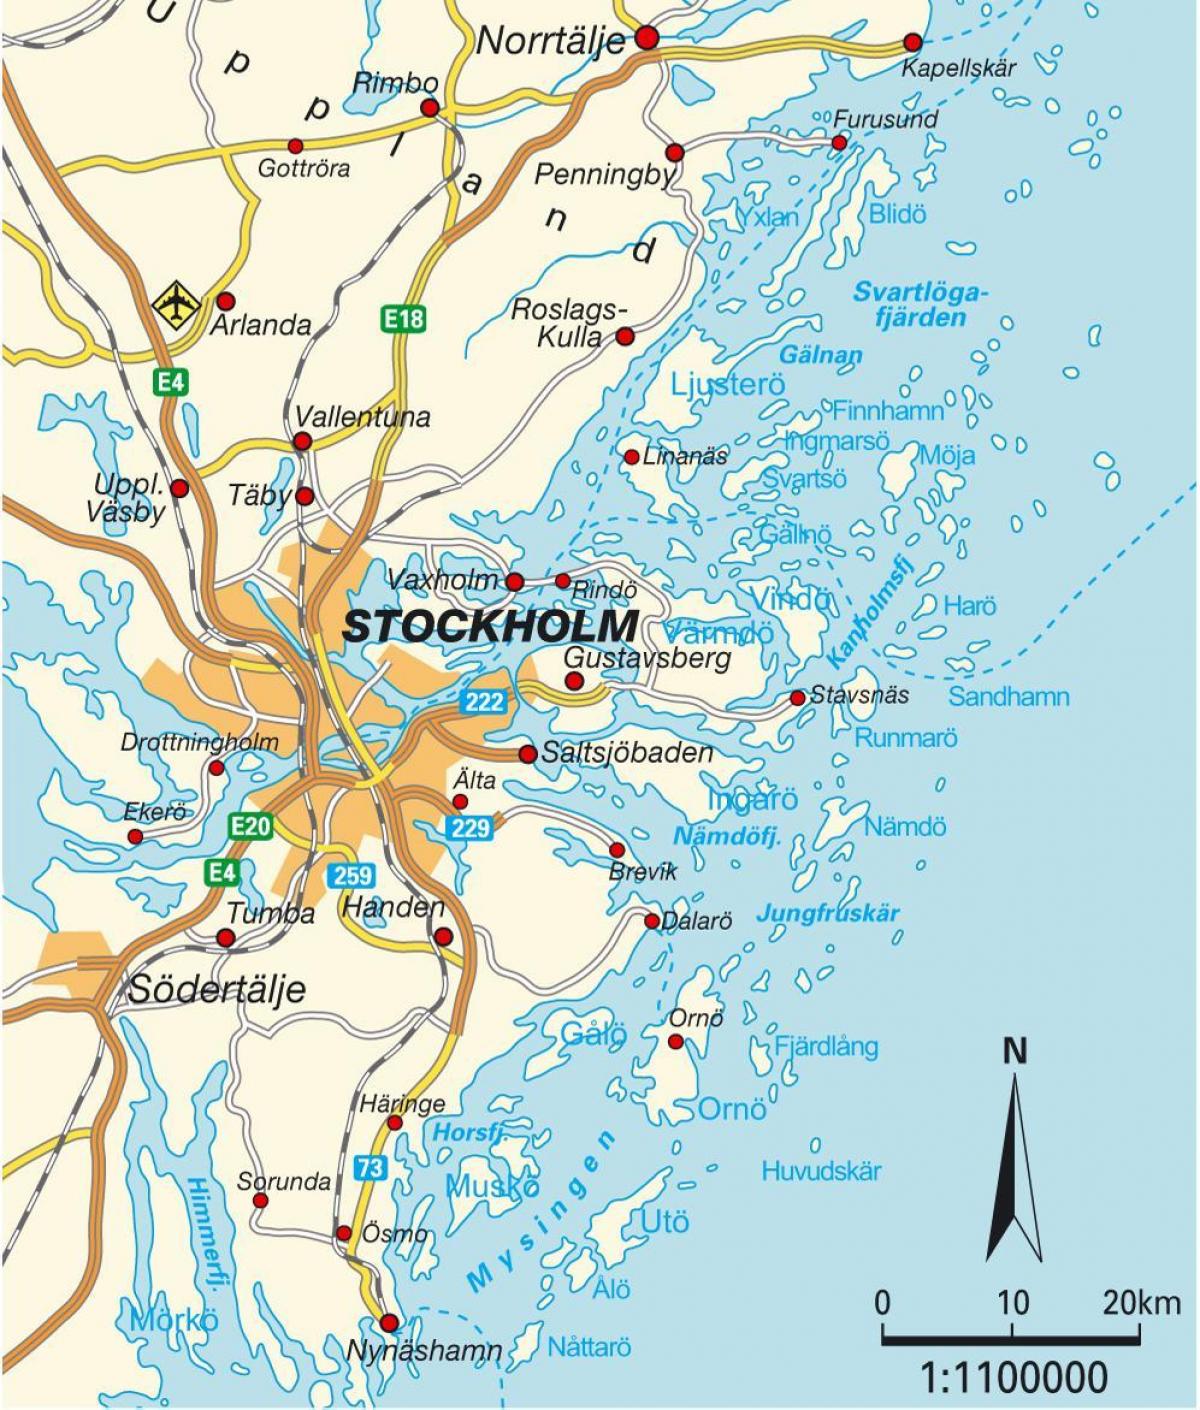 סטוקהולם על המפה